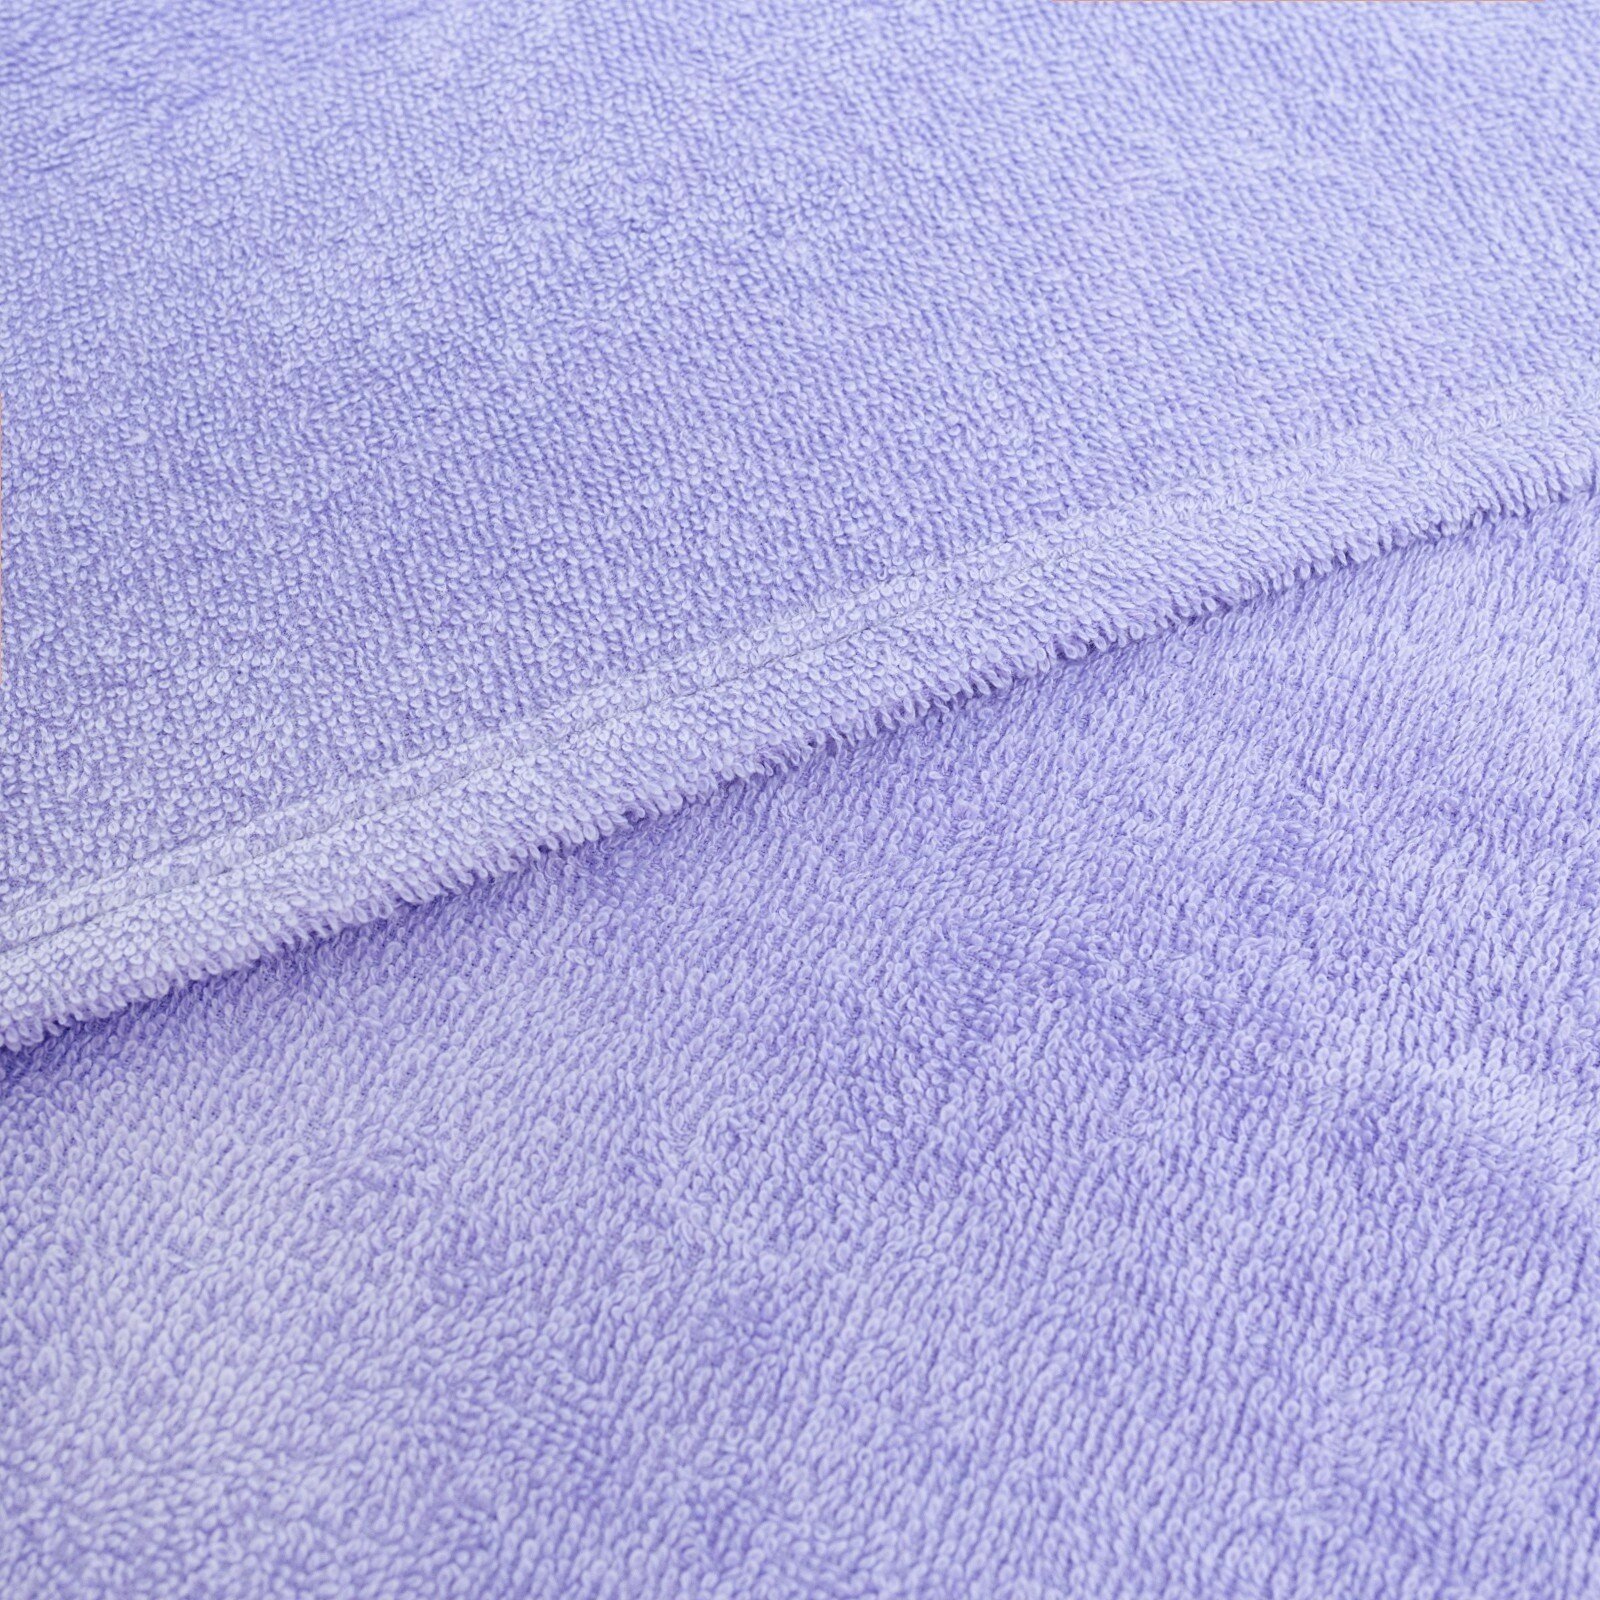 Набор для купания (полотенце-уголок 85*85±2см, полотенце 40*55см, рукавица), цвет сиреневый